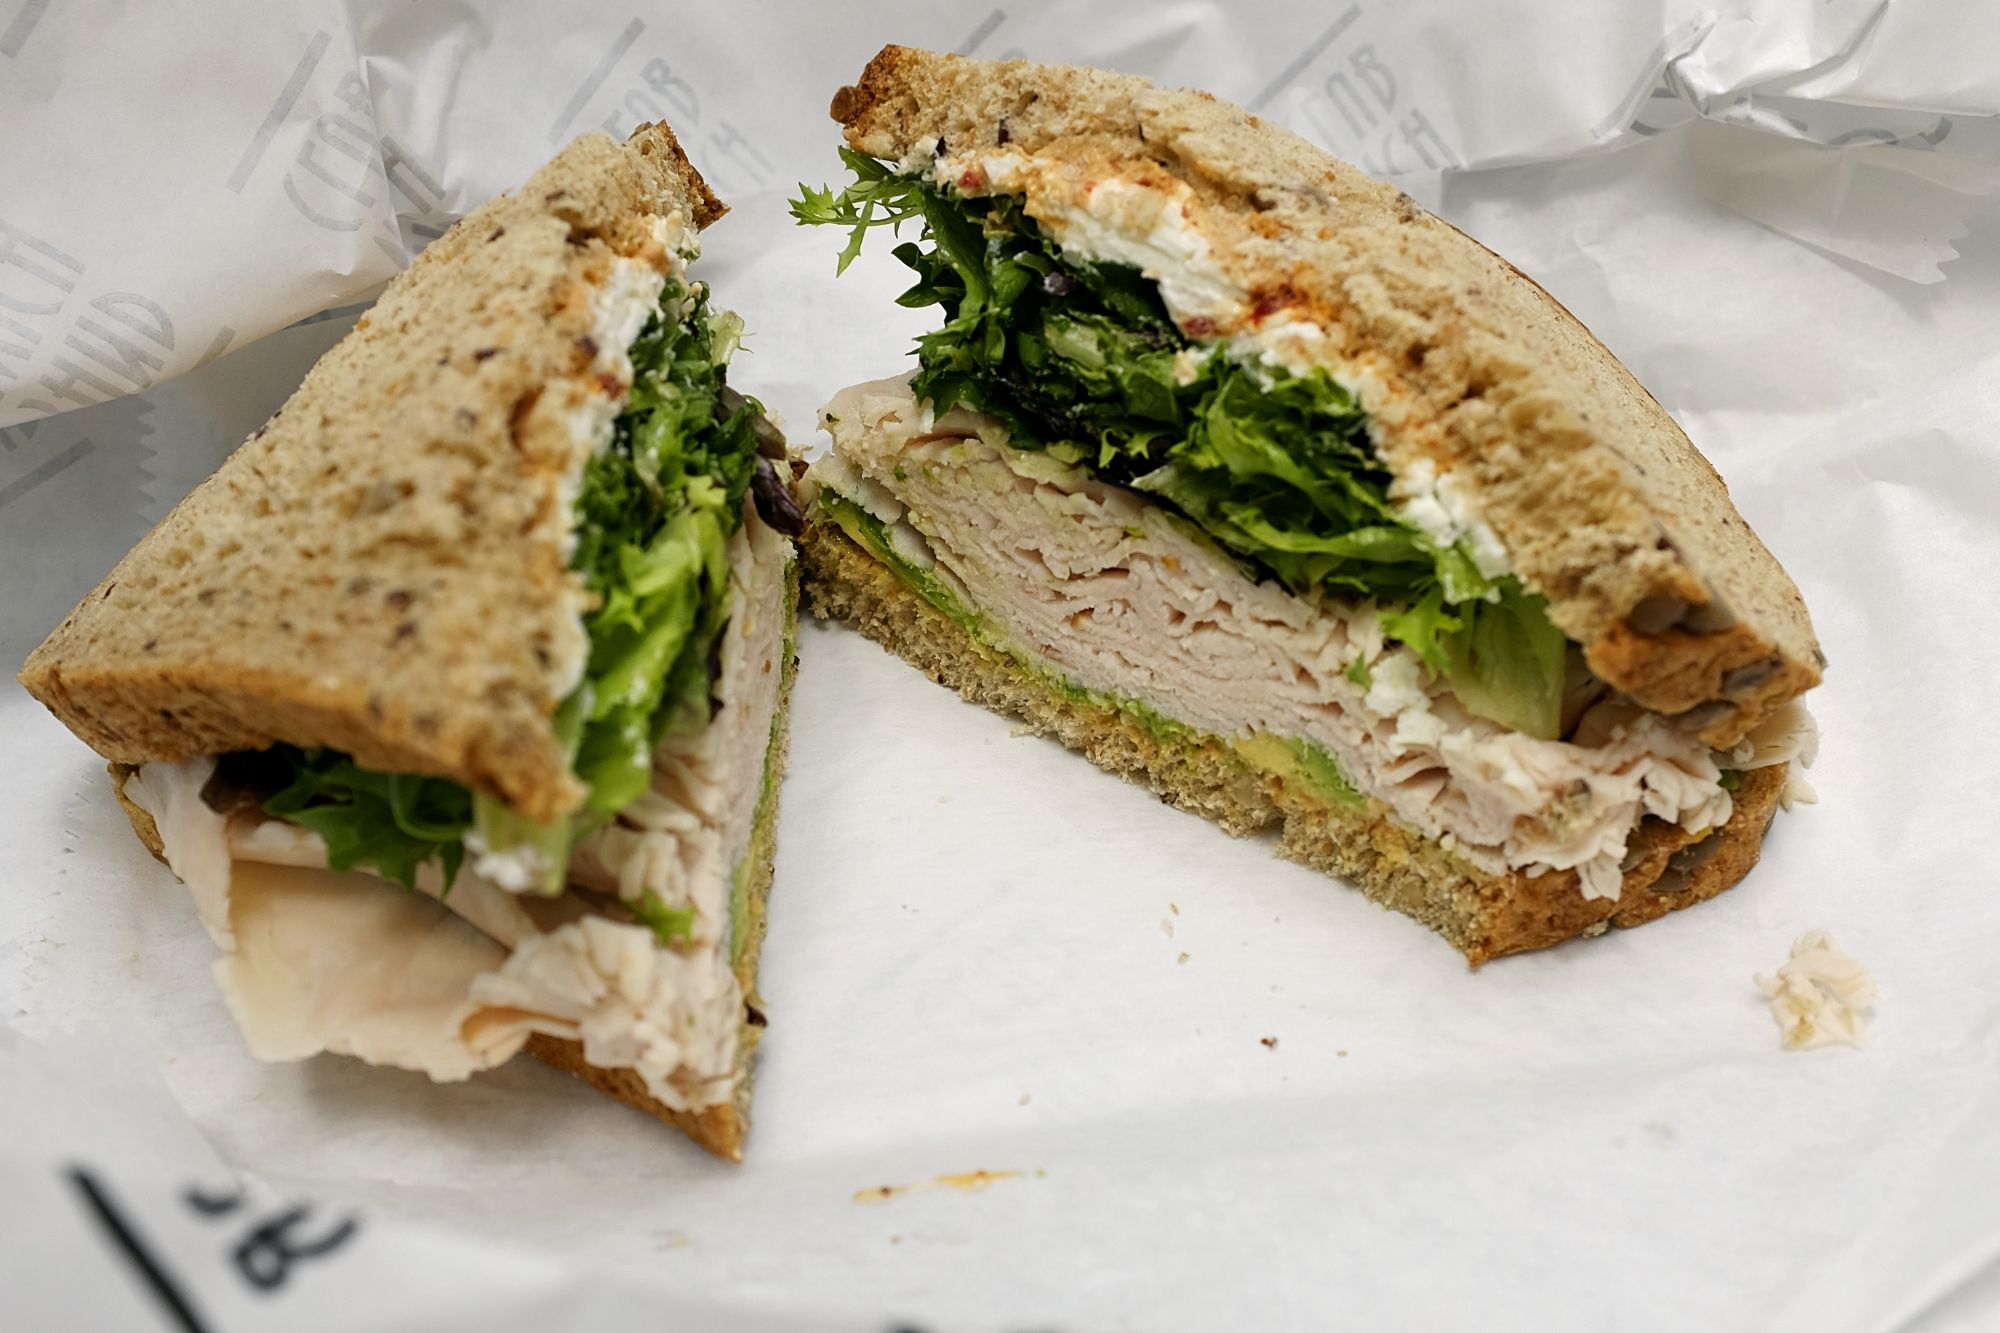 Turkey Sandwich with avocado